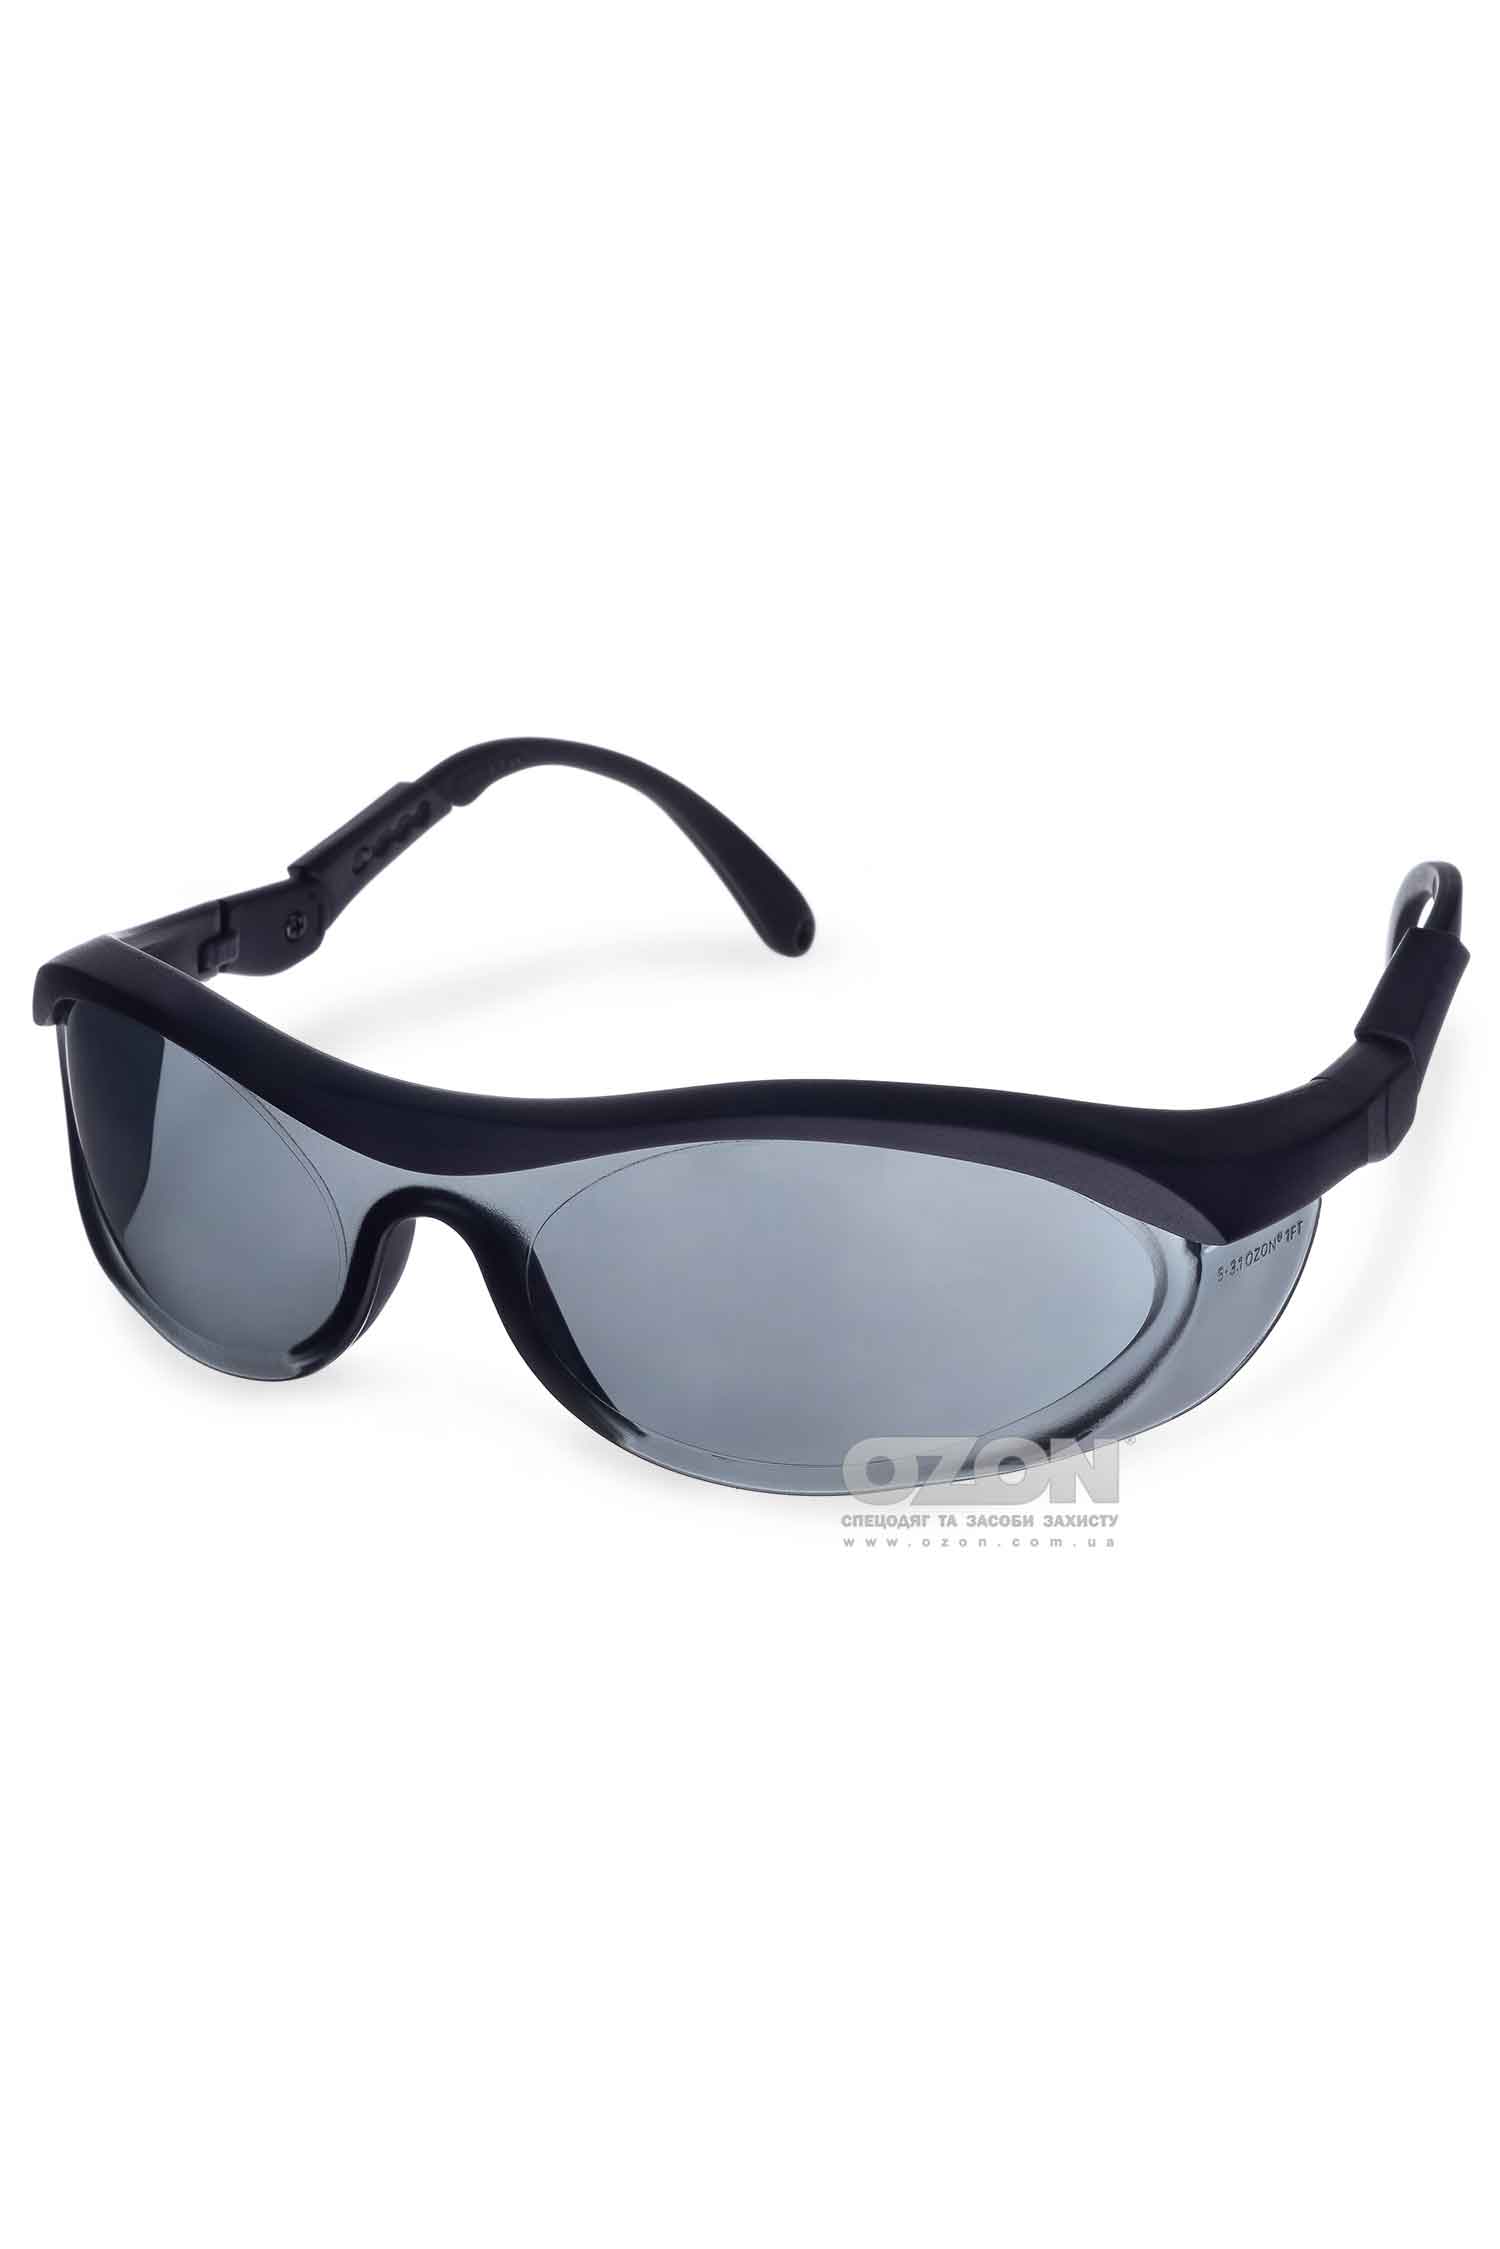 Захисні окуляри OZON™ 7-035, затемнені - Фото 1